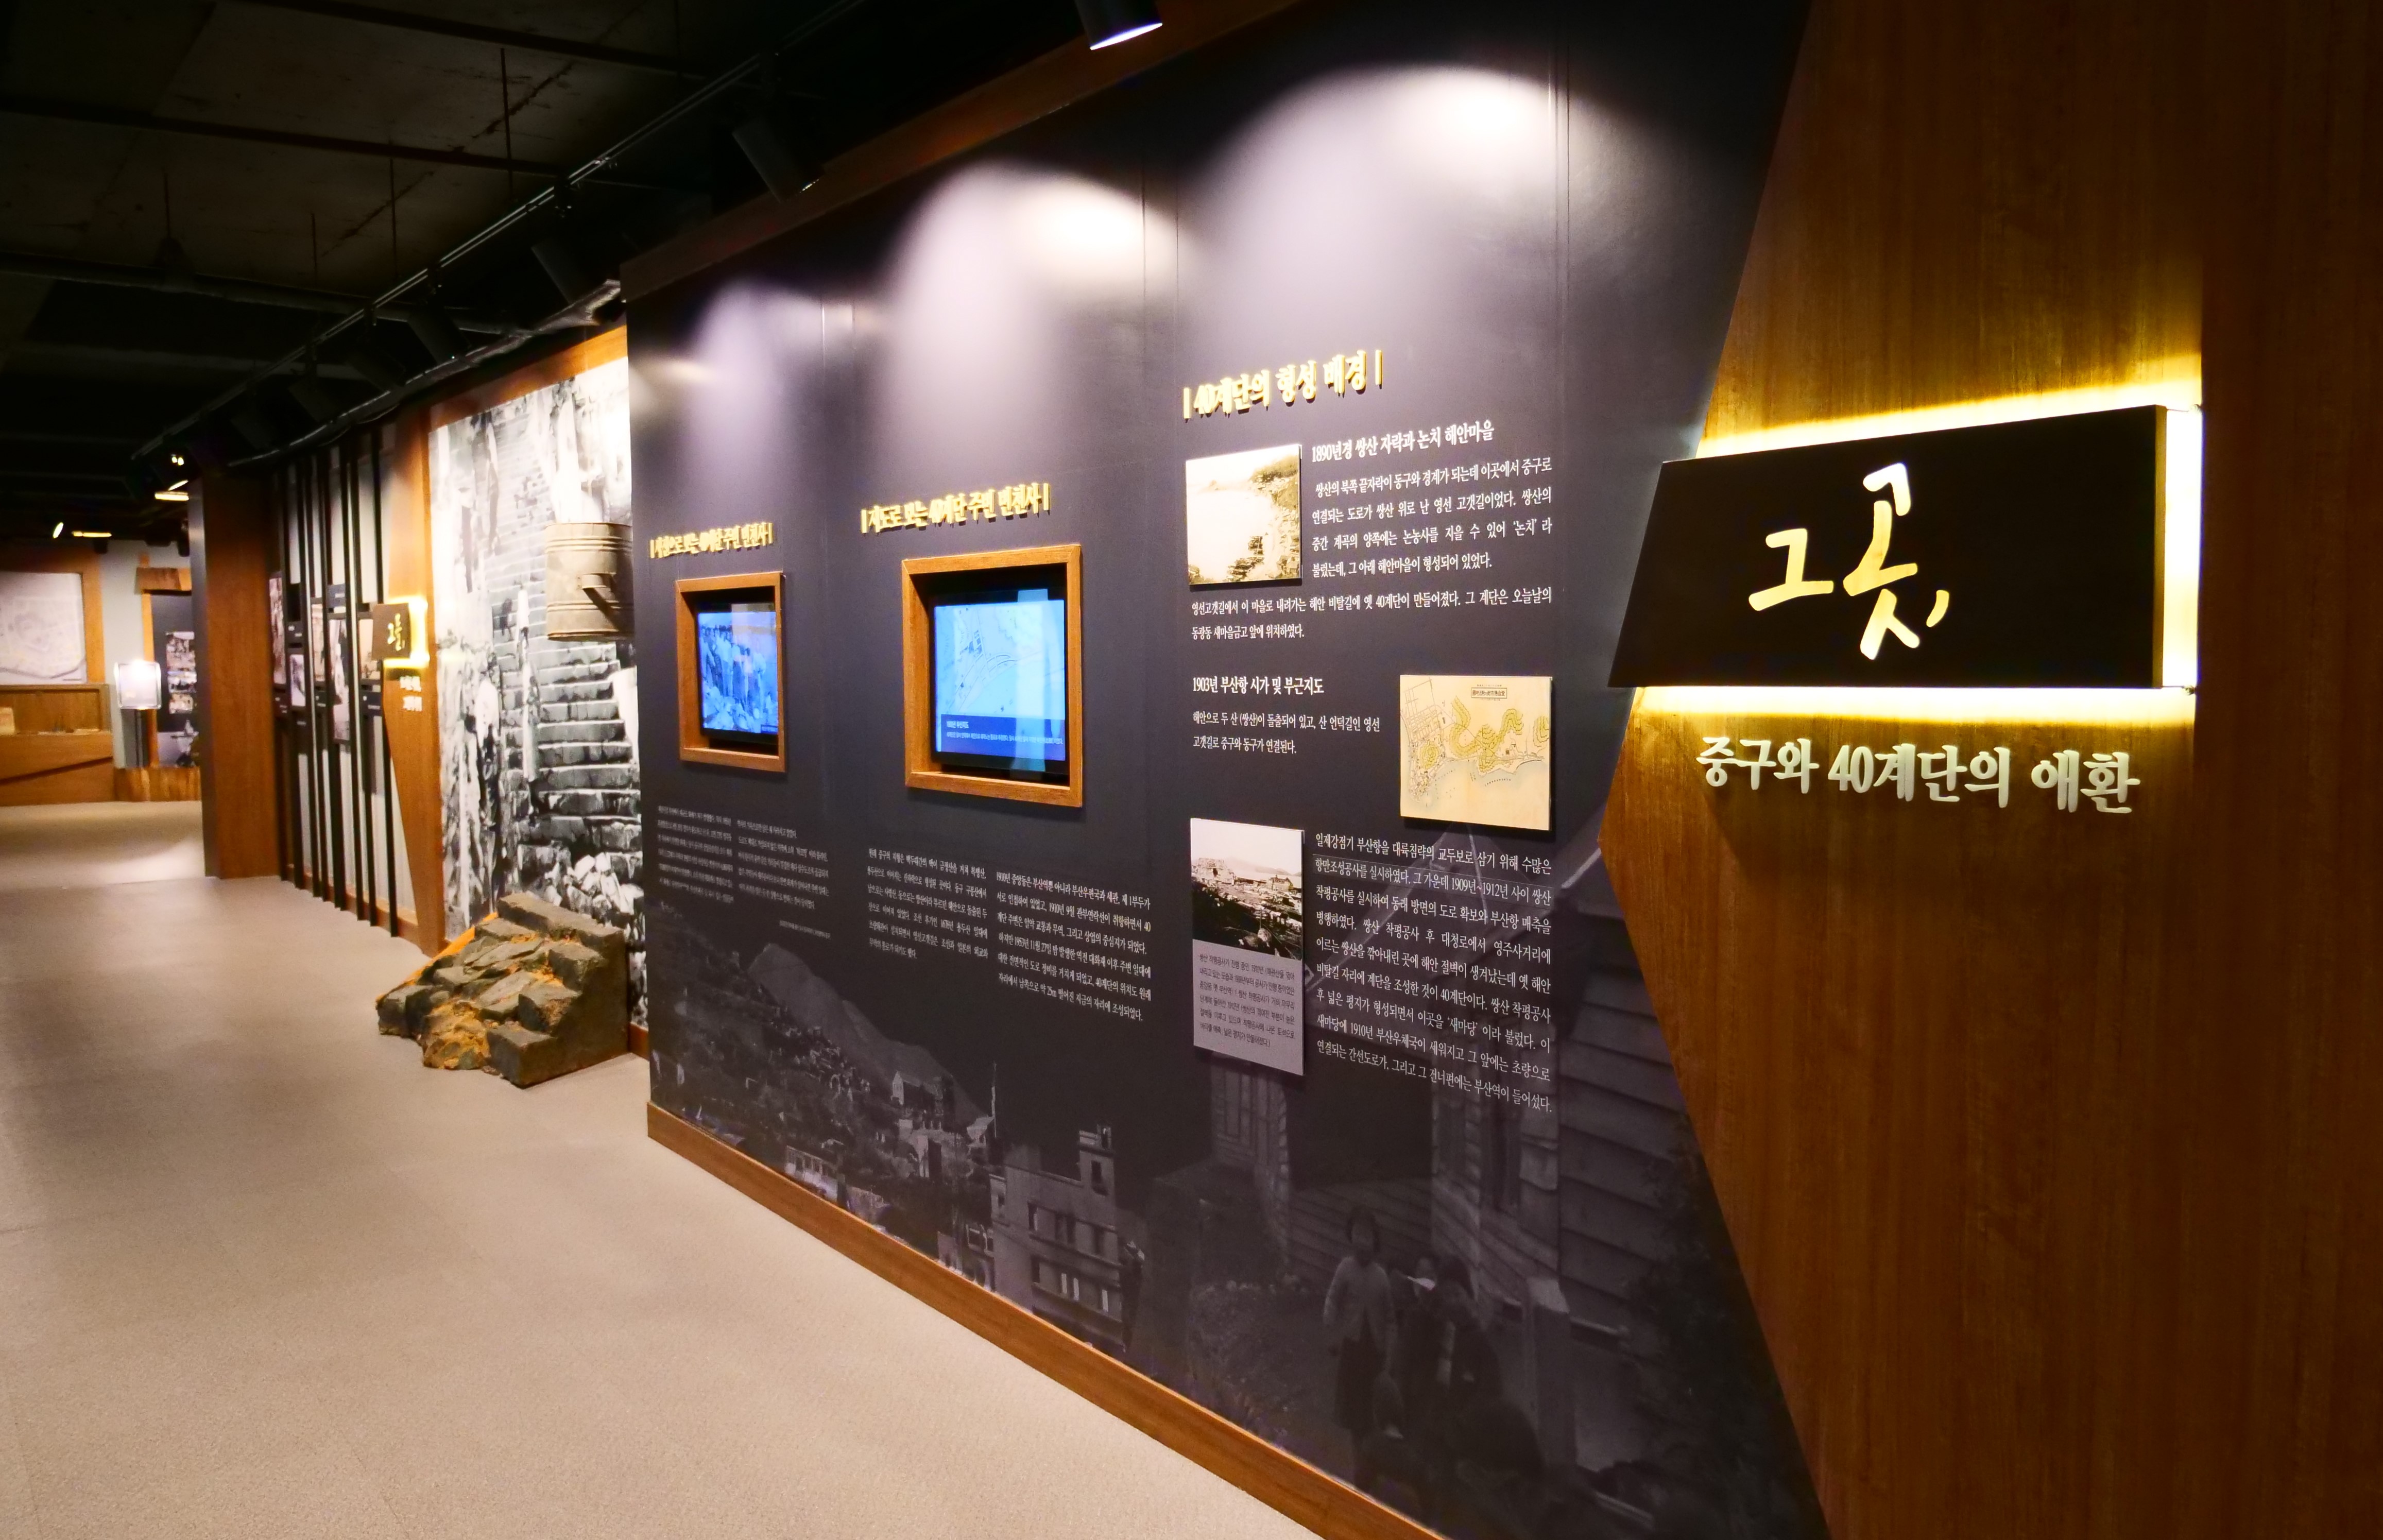 A múzeum részletesen beszámol a koreai háború veszteségeiről és a menekültválságról